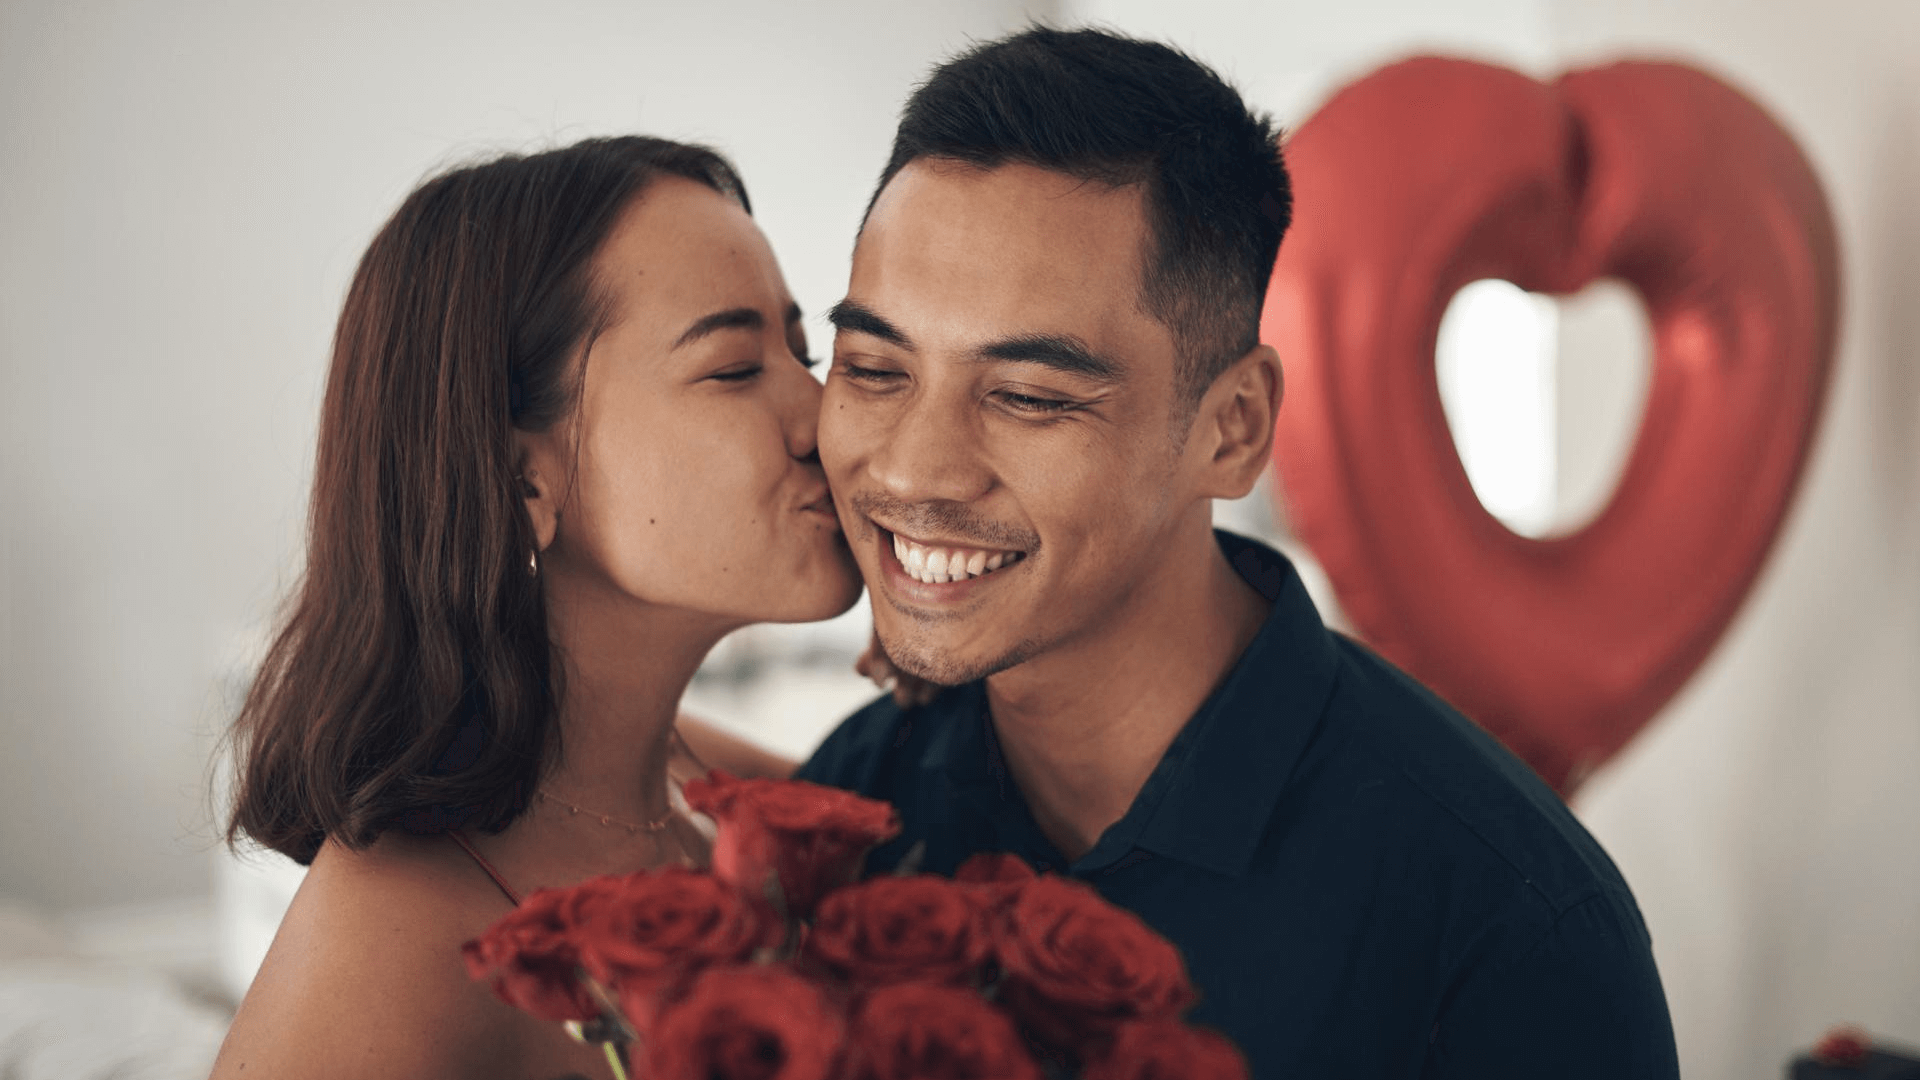 Regali fai da te per San Valentino – Fidanzatifelici